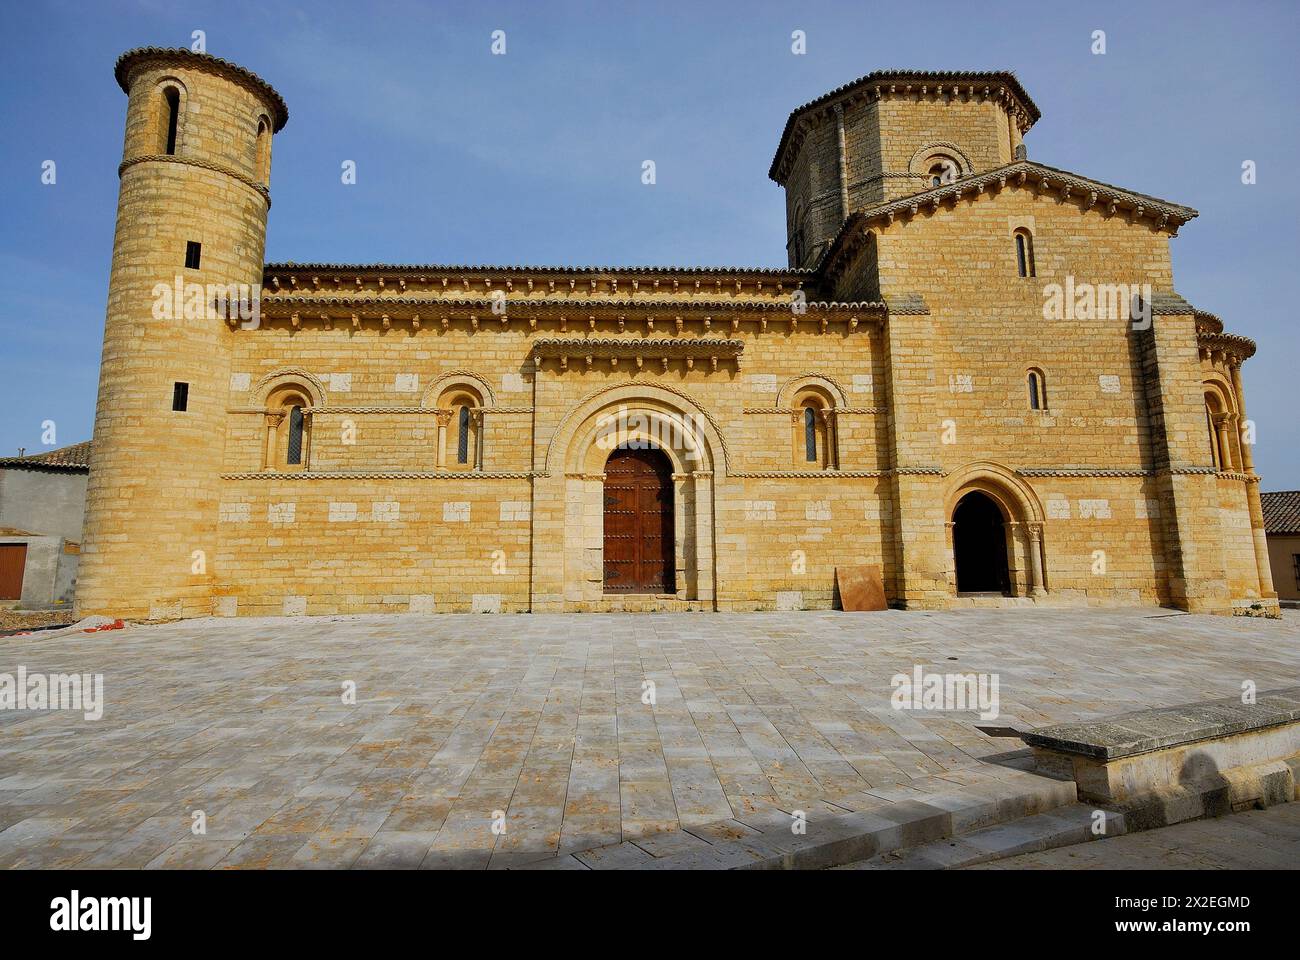 Church of San Martin de Fromista, Palencia, Spain Stock Photo